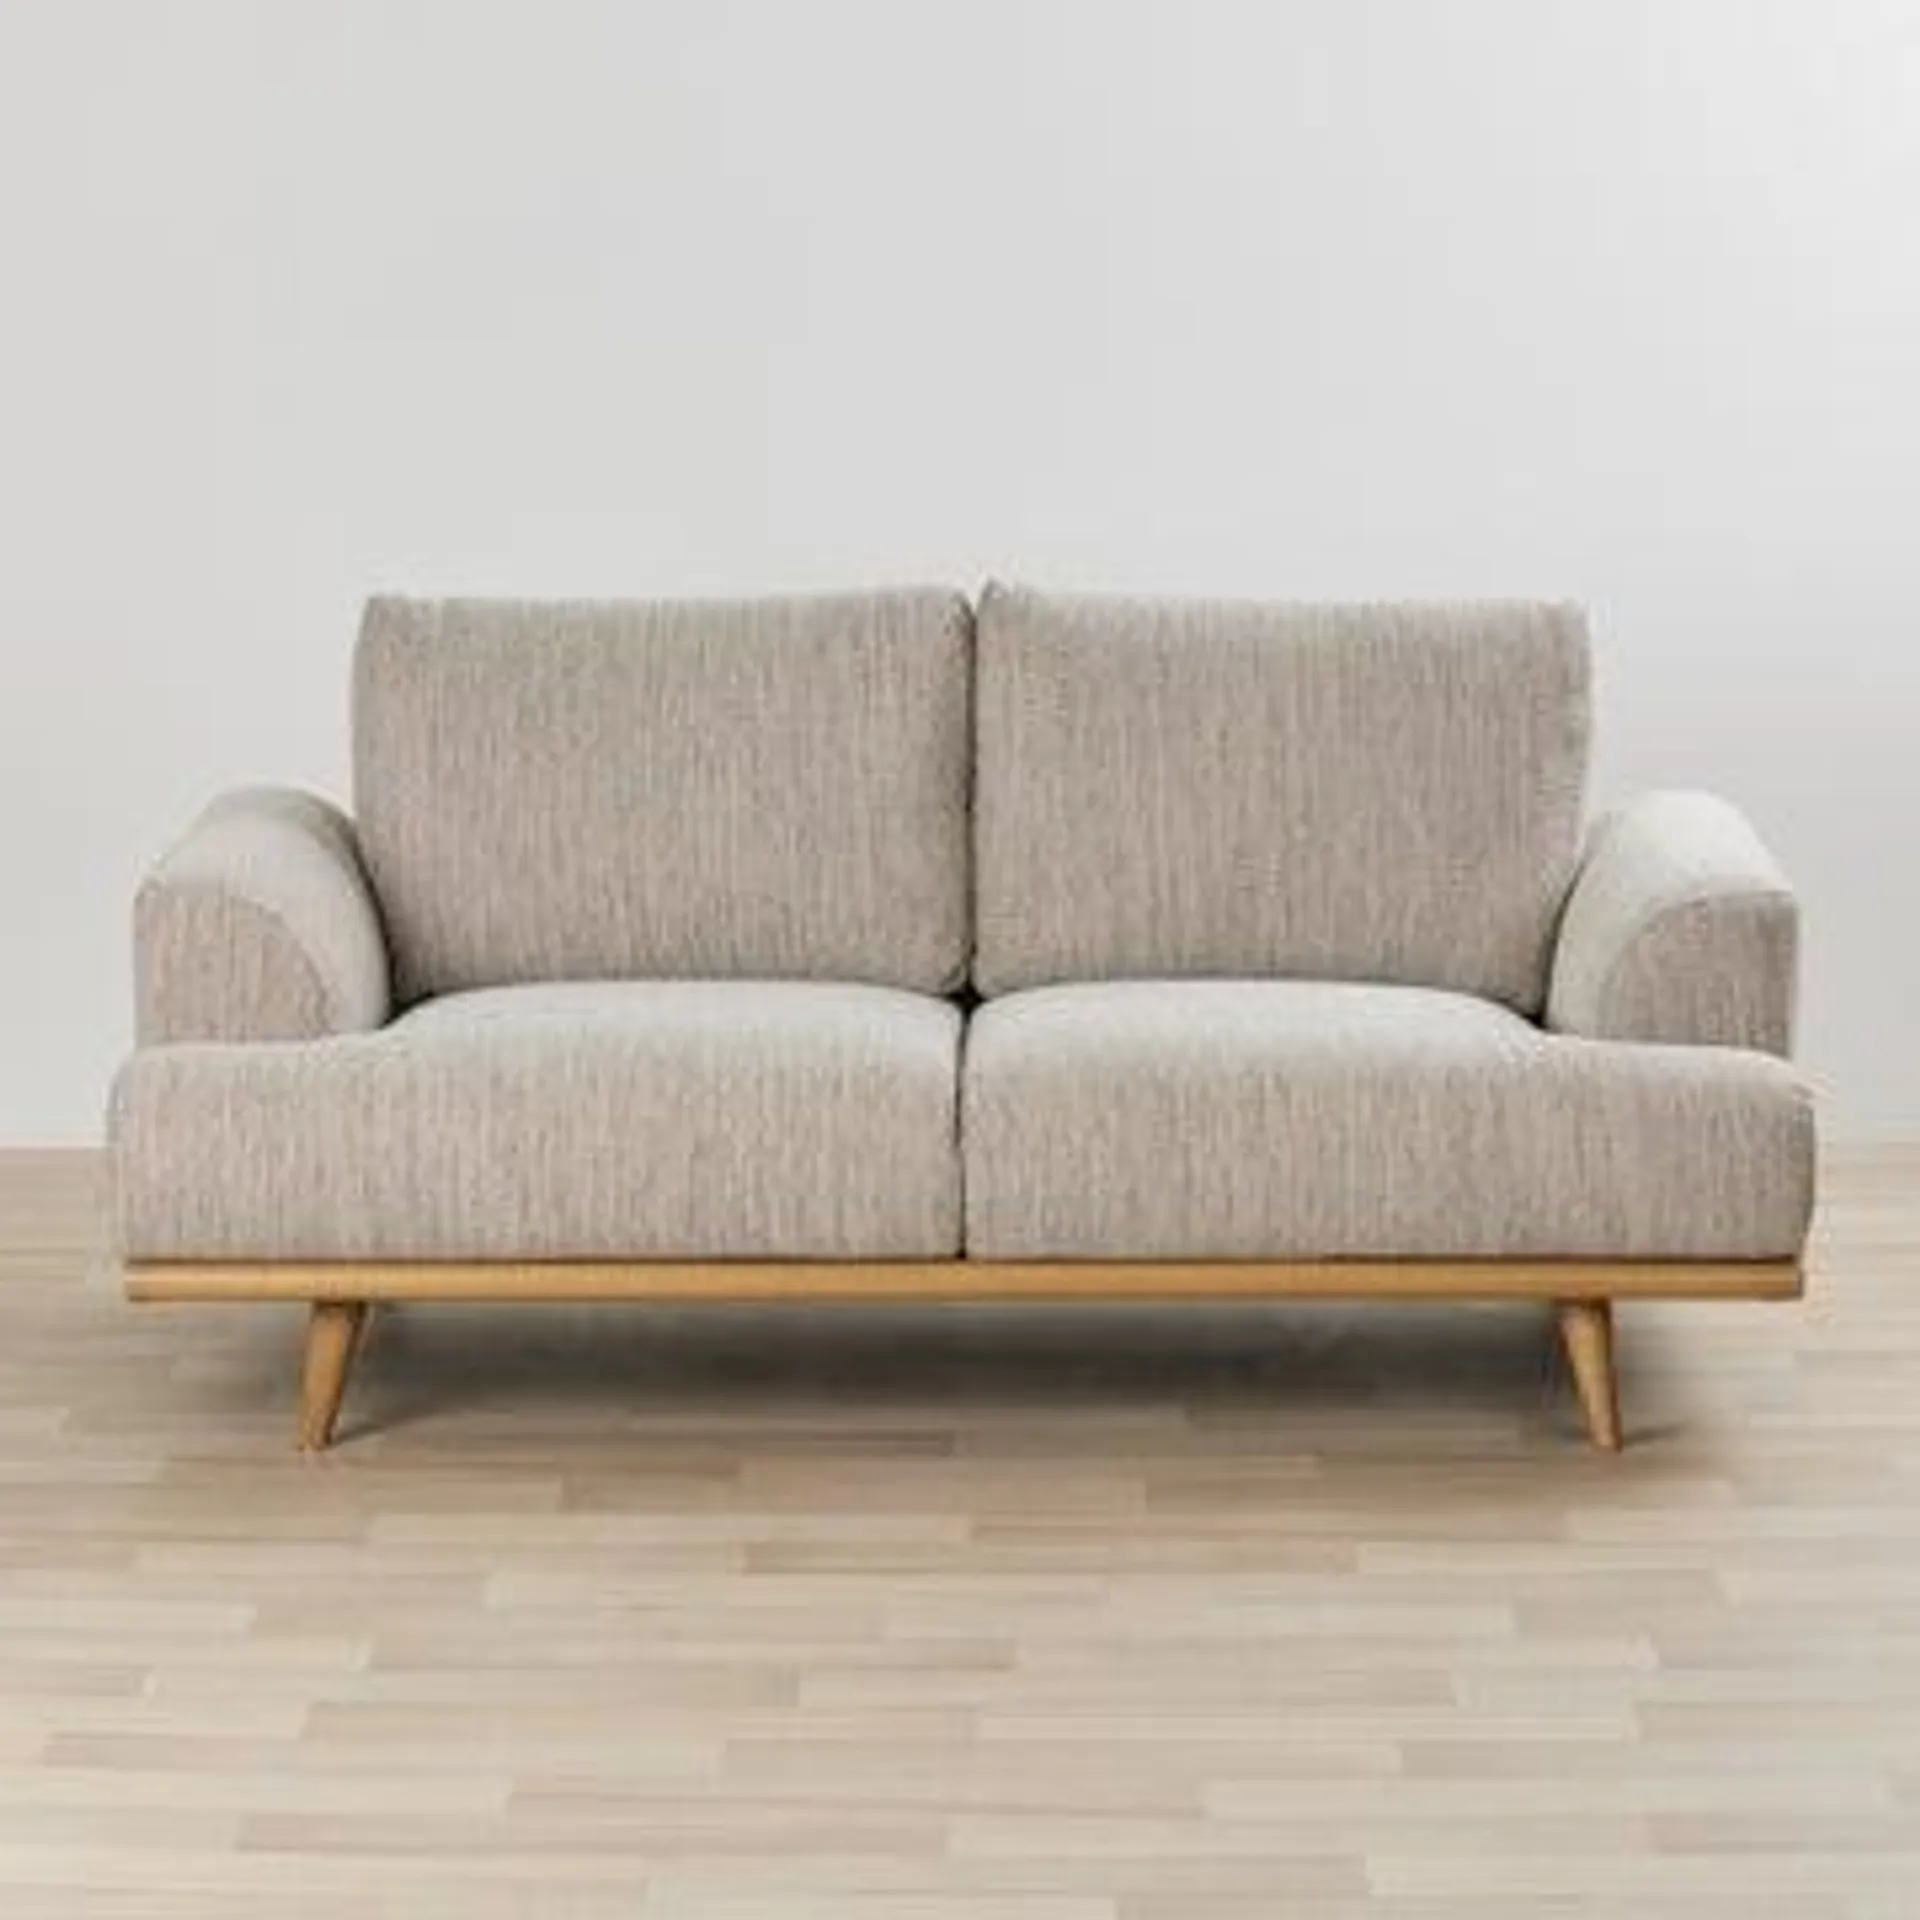 Montemart 2-Seat Sofa - Biscuit/Smoke